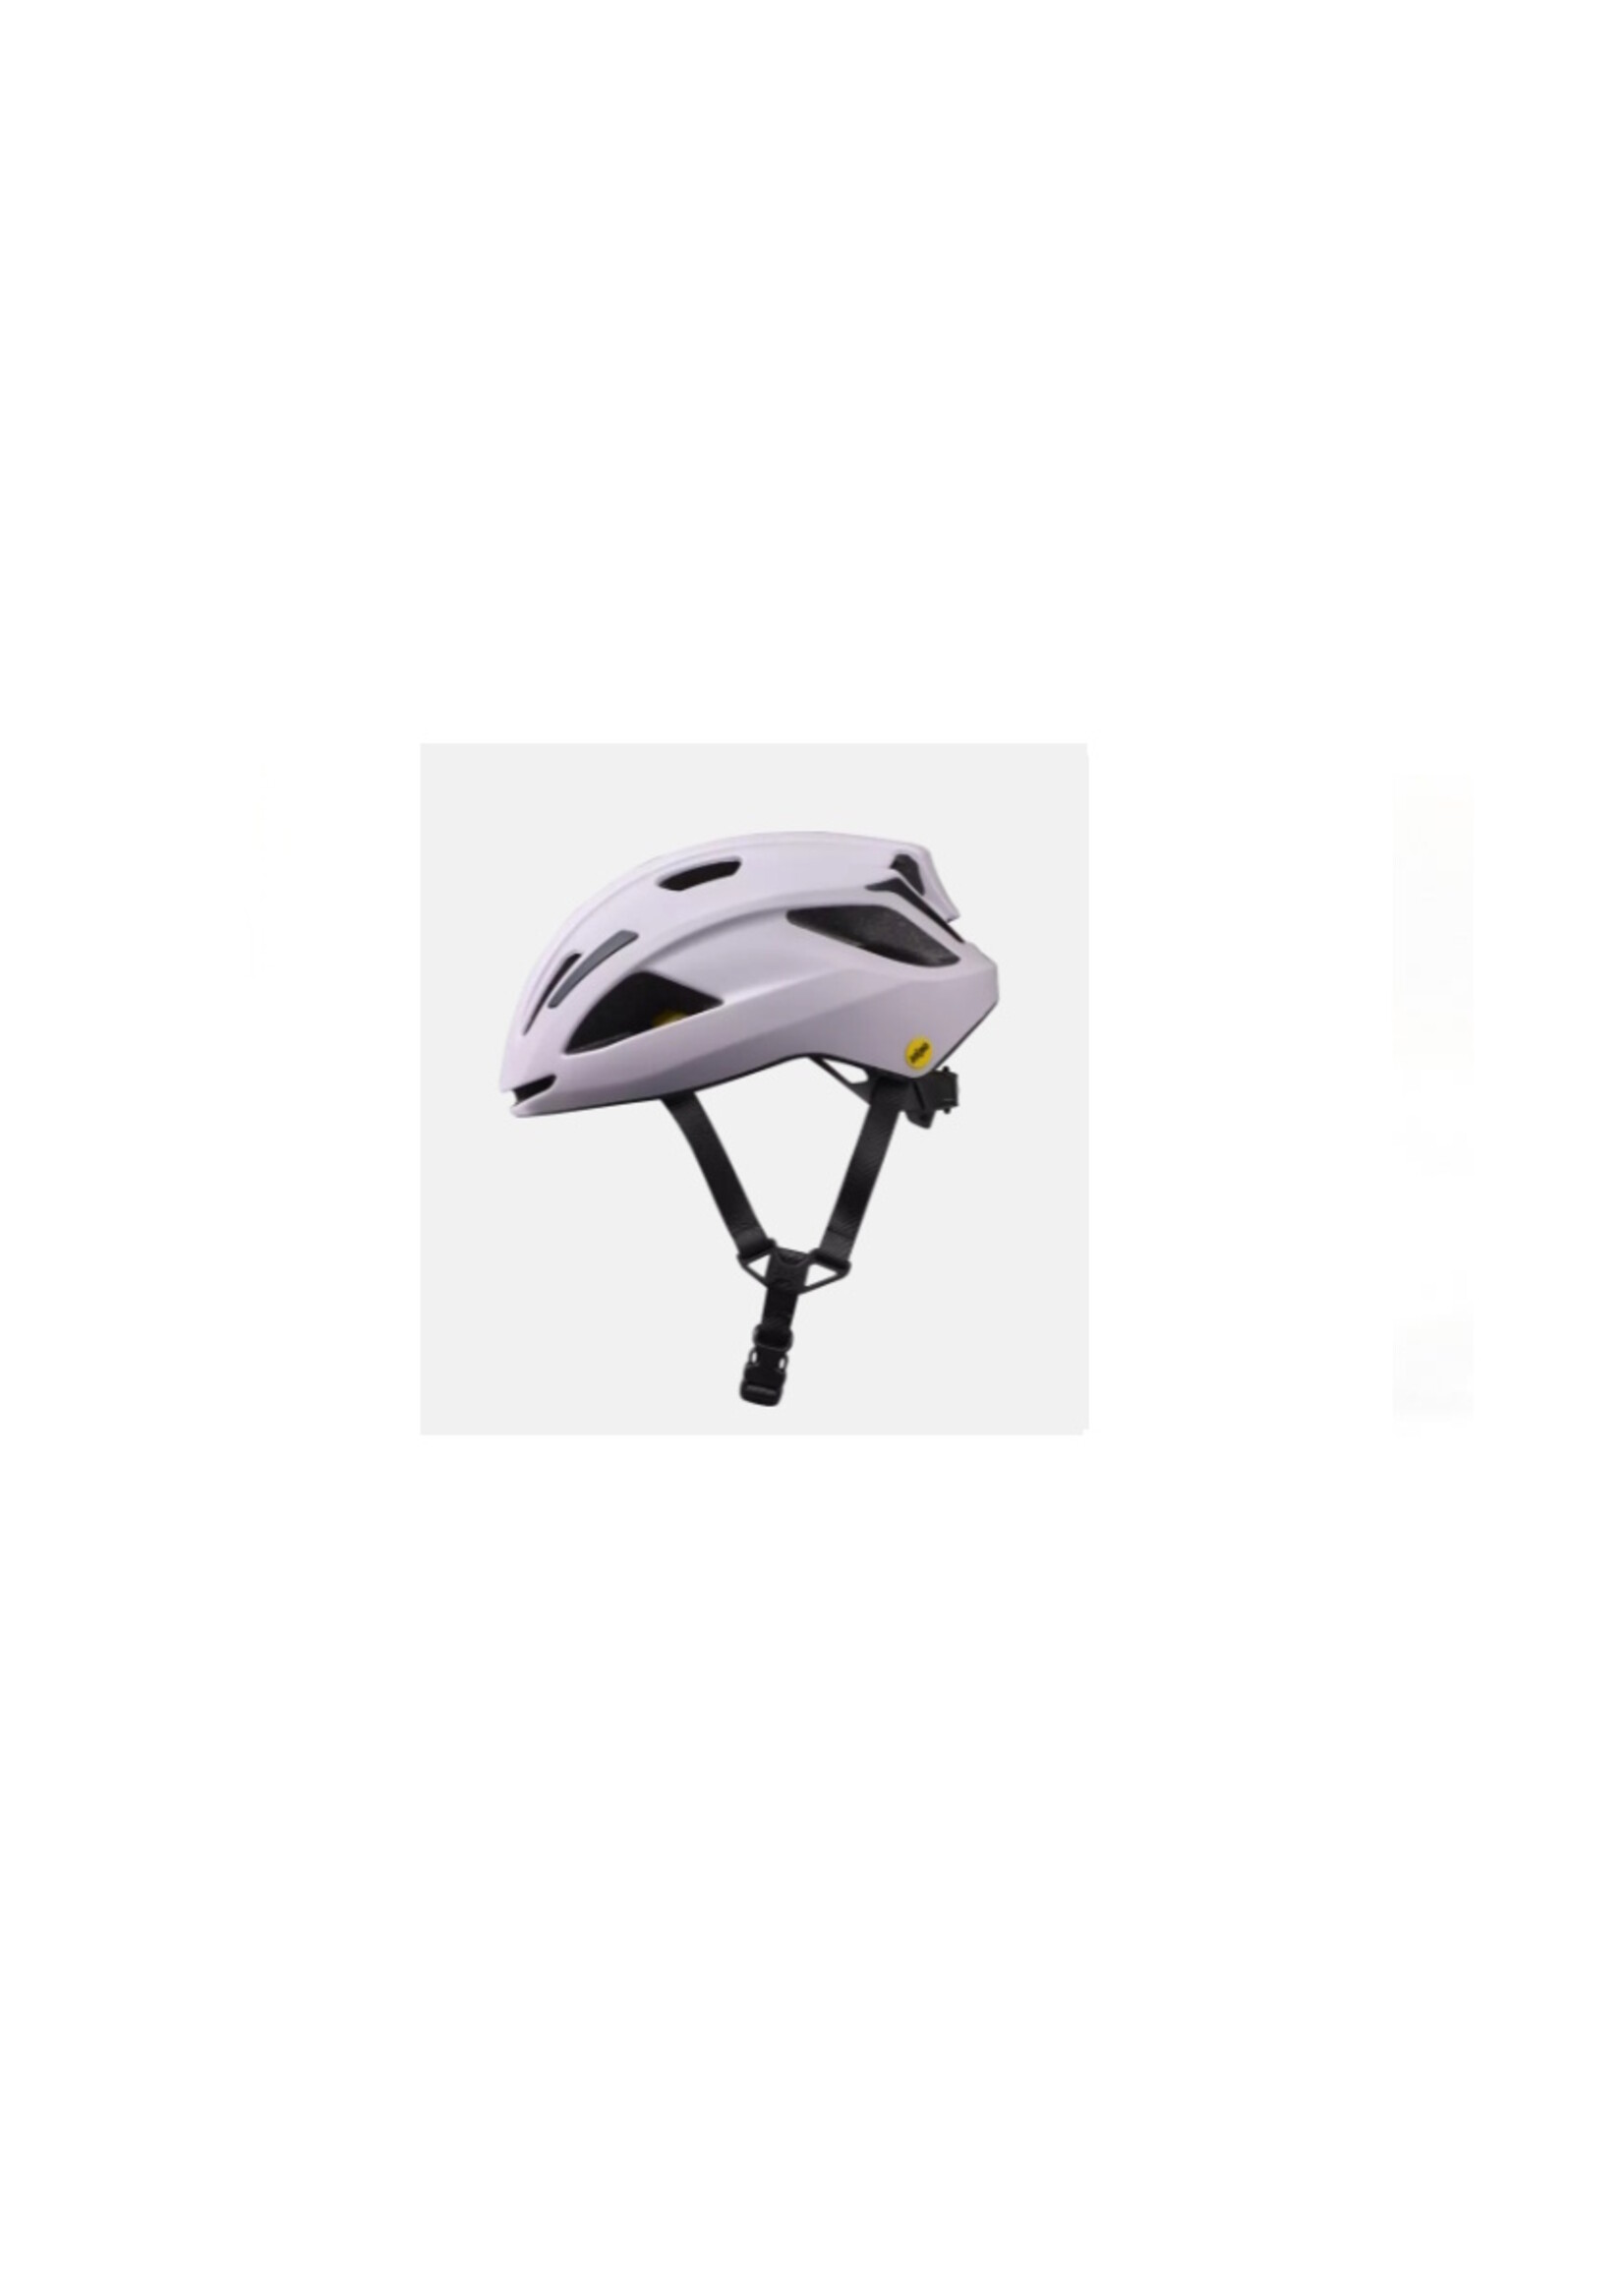 Specialized Align II MIPS Helmet